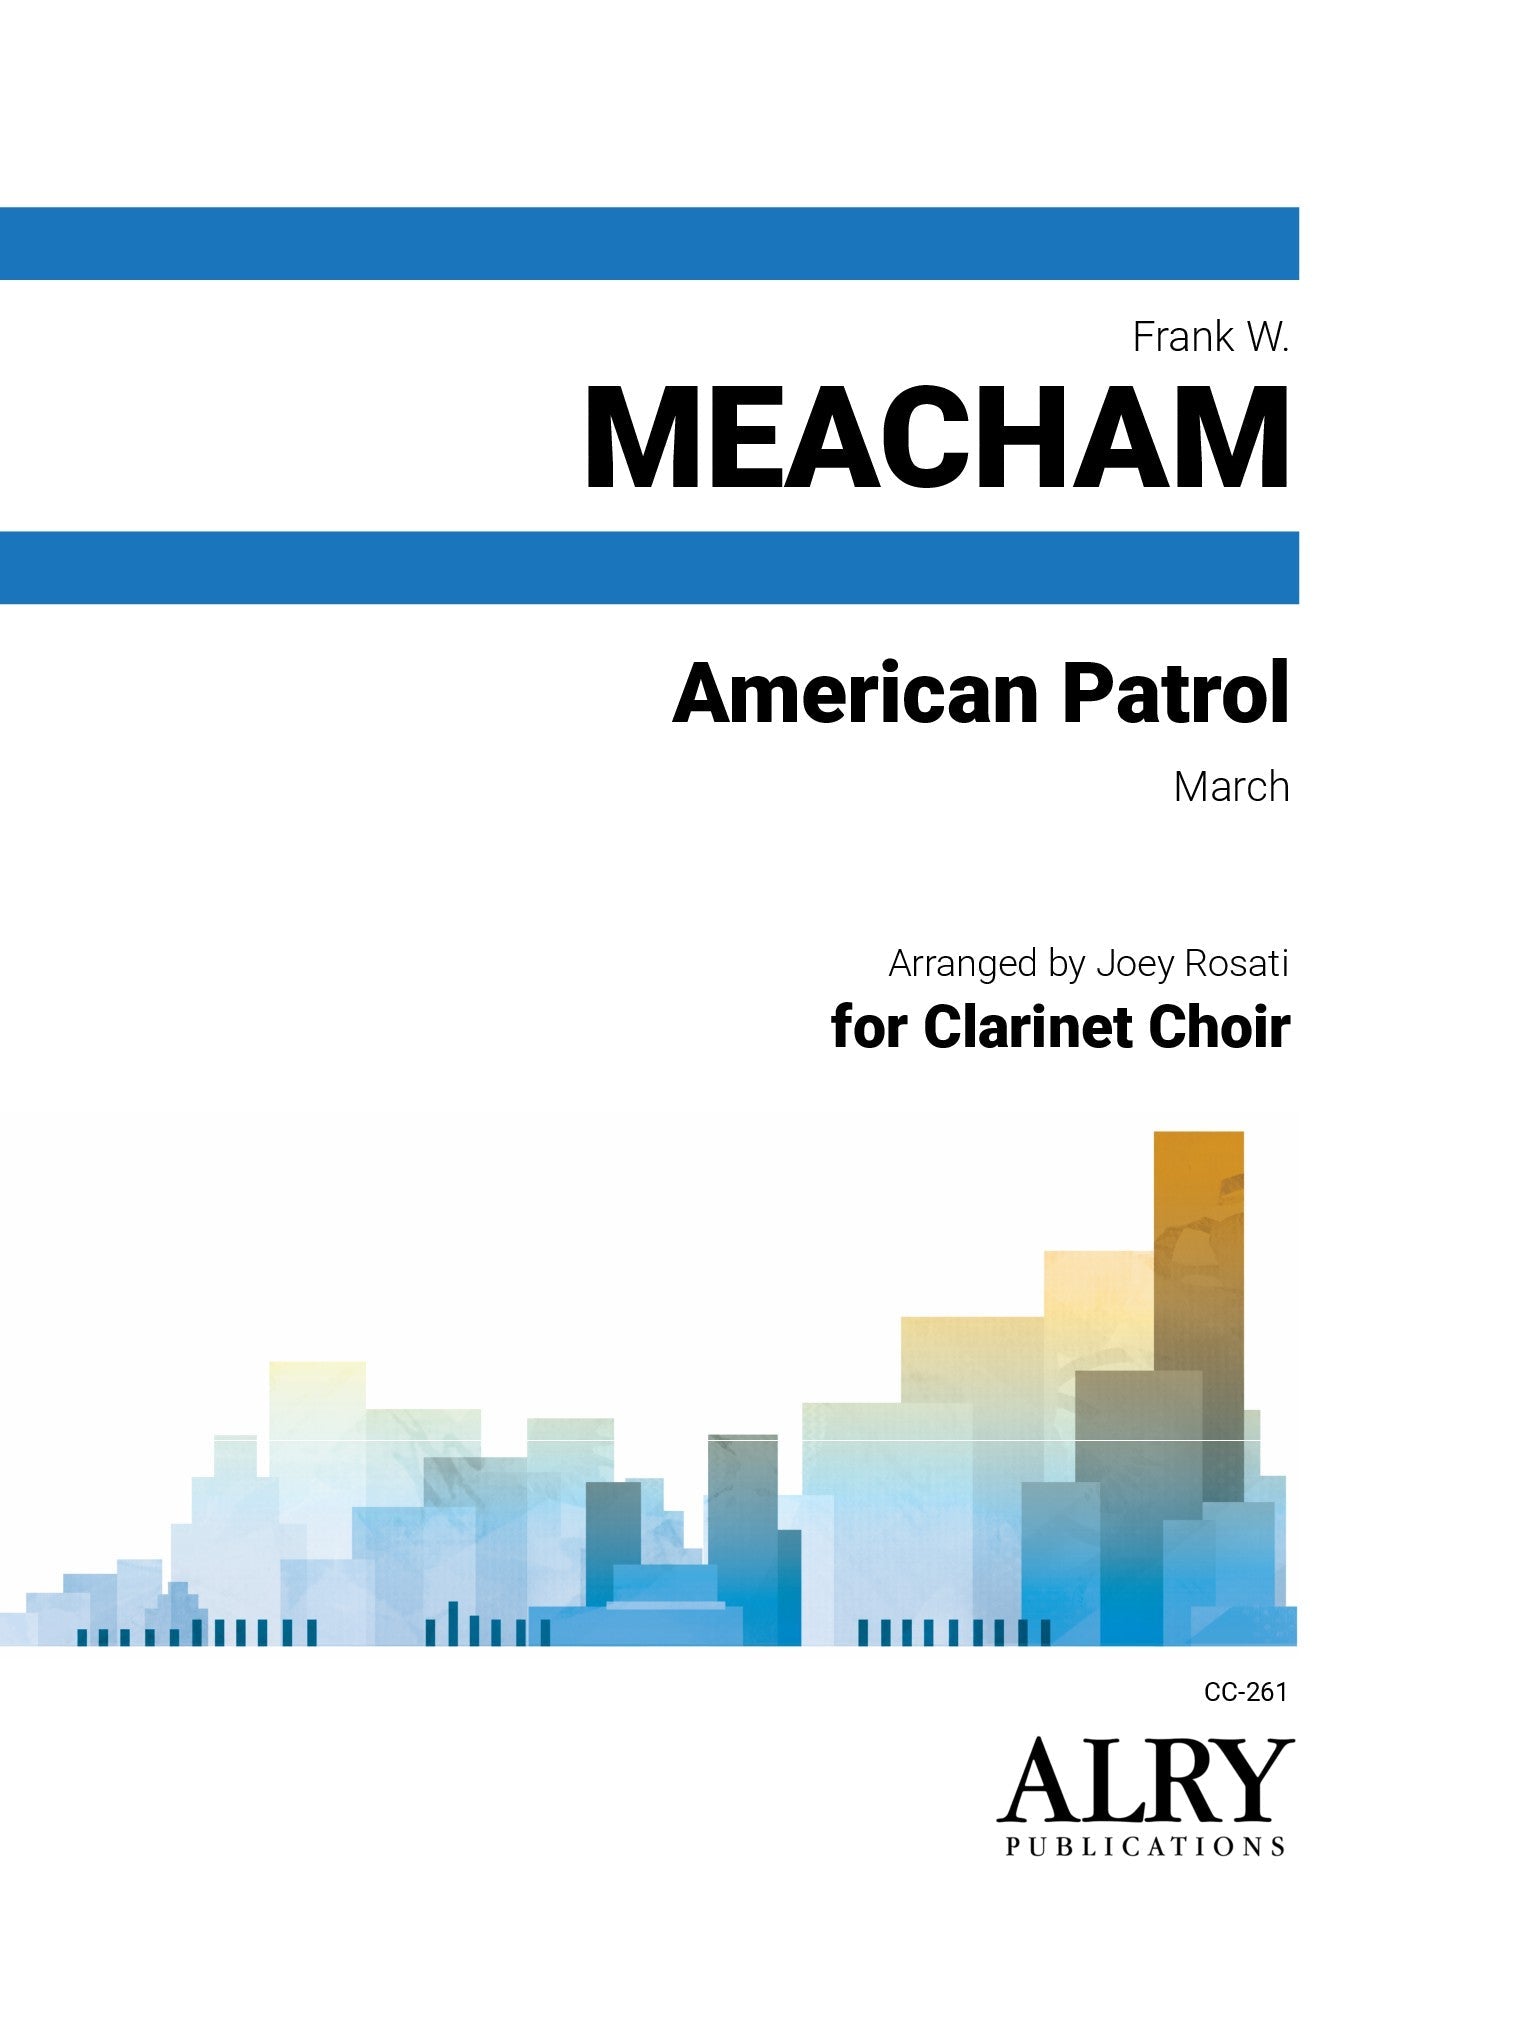 Meacham (arr. Joey Rosati) - American Patrol for Clarinet Choir